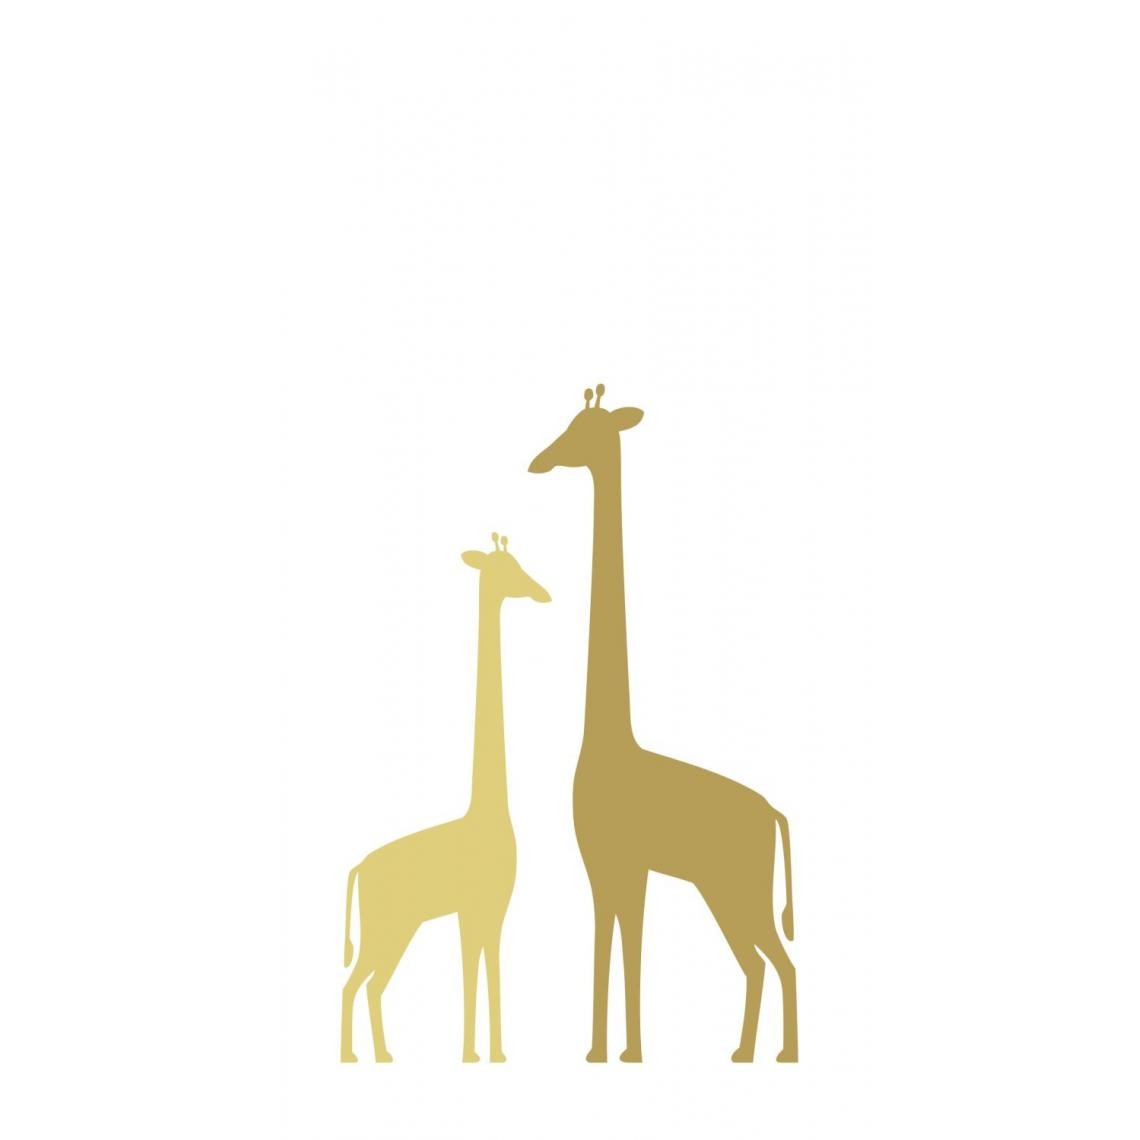 ESTAhome - ESTAhome papier peint panoramique girafes jaune ocre - 158925 - 1.5 x 2.79 m. - Papier peint